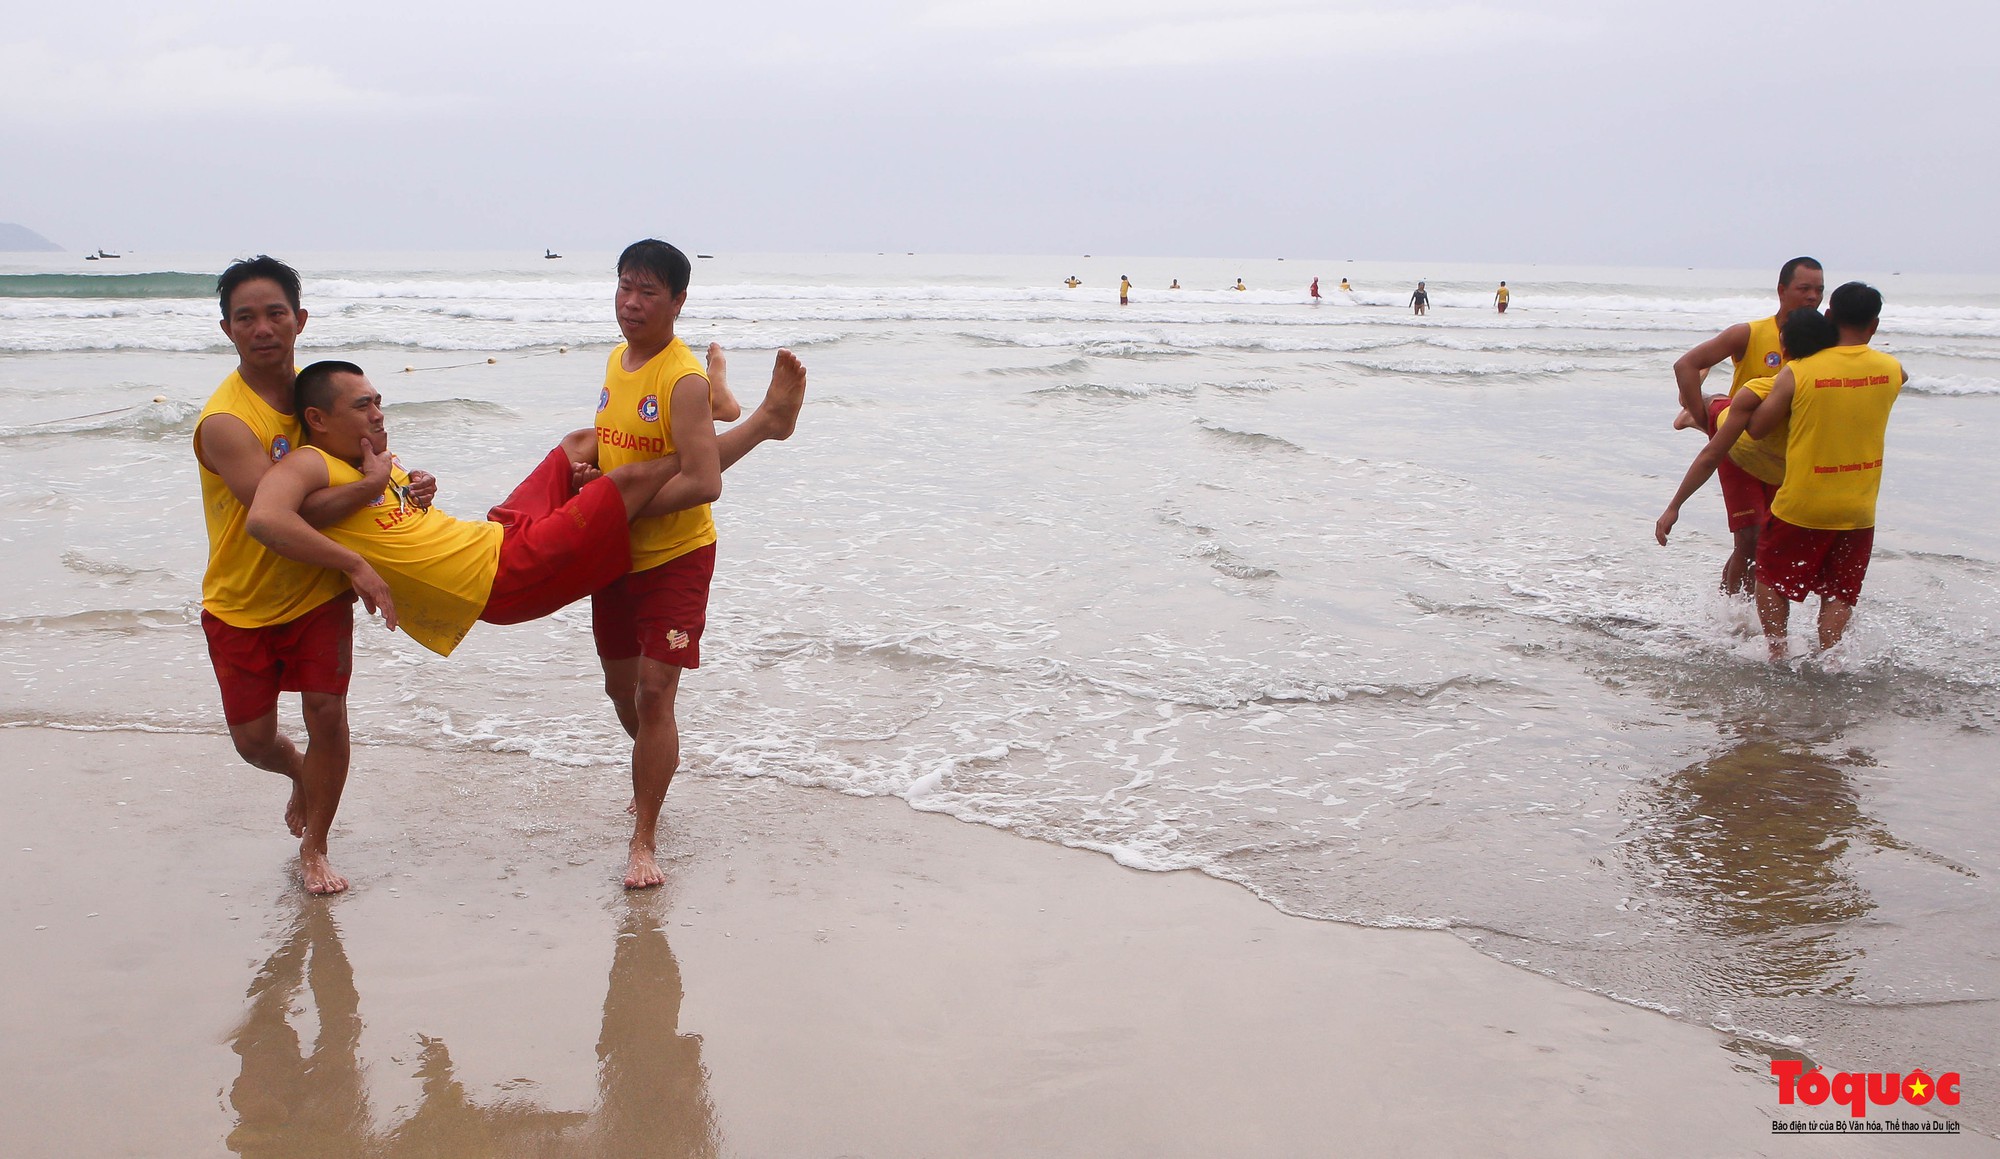 Hình ảnh chuyên gia quốc tế giúp Đội cứu hộ biển Đà Nẵng kỹ năng cứu hộ - Ảnh 13.